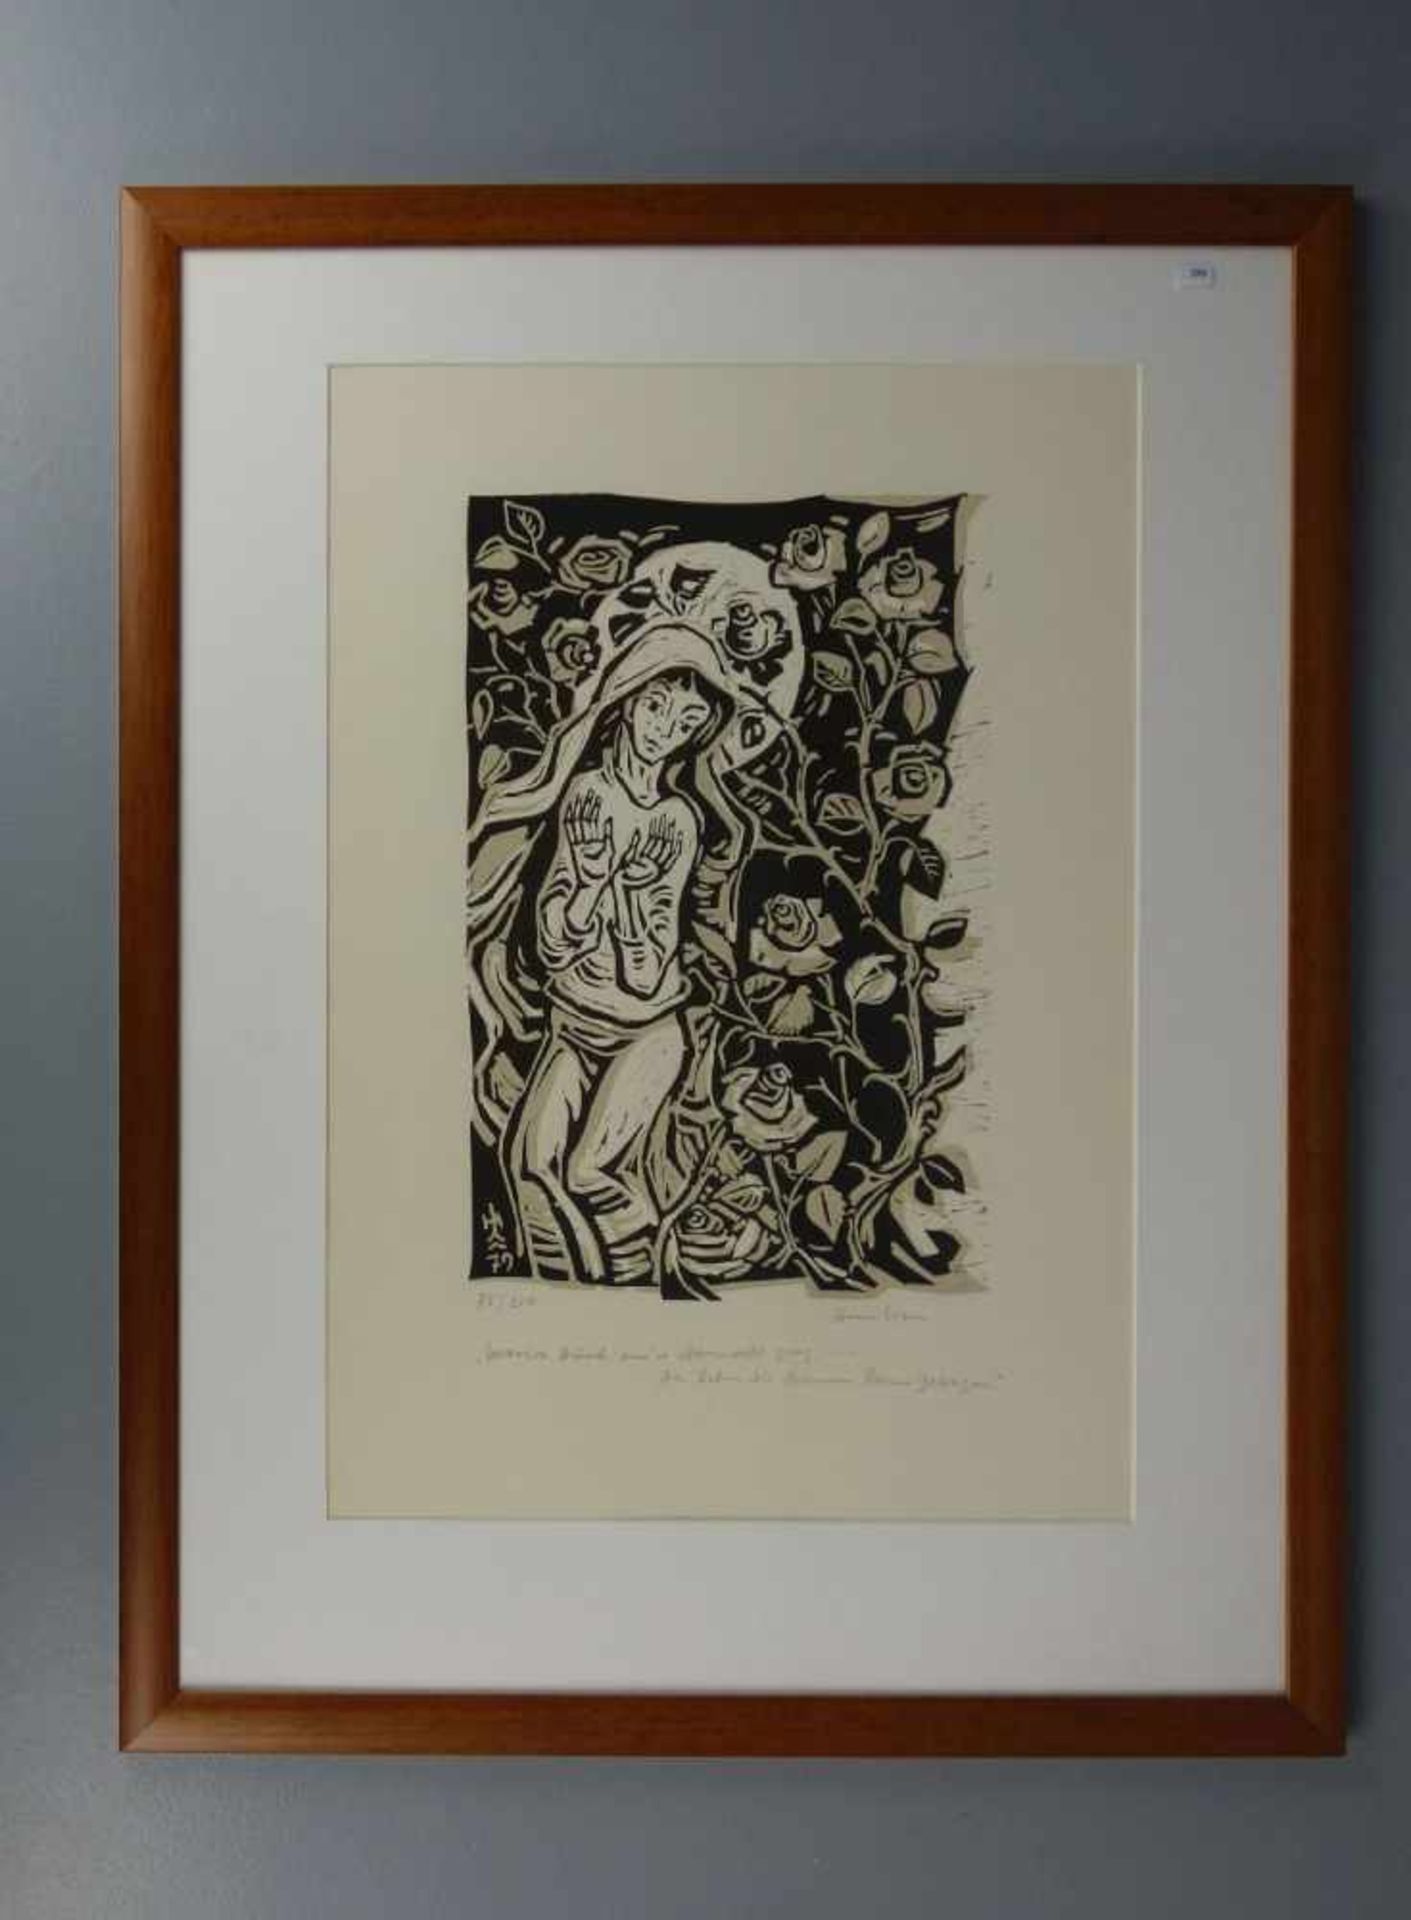 NASS, HEIN (1903 - 1985), Lithographie / Künstlersteinzeichnung / lithography: "Maria durch einen